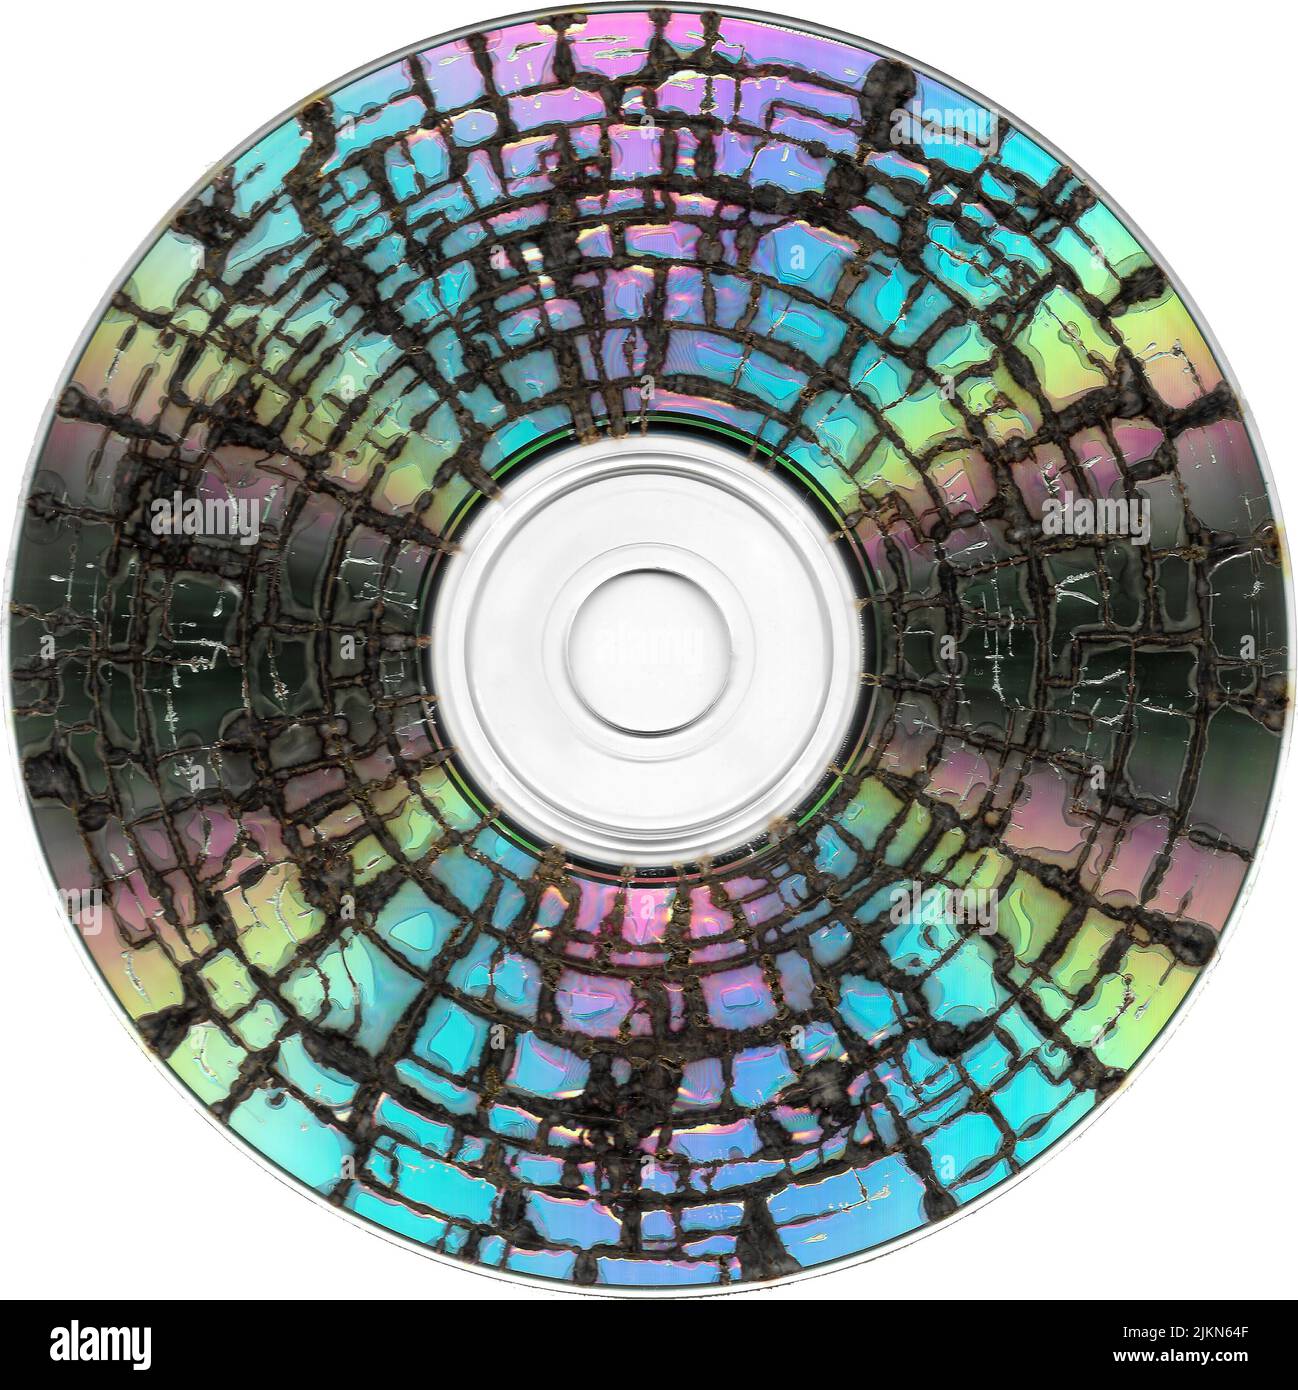 Le disque CD cassé avec une palette de couleurs arc-en-ciel Photo Stock -  Alamy